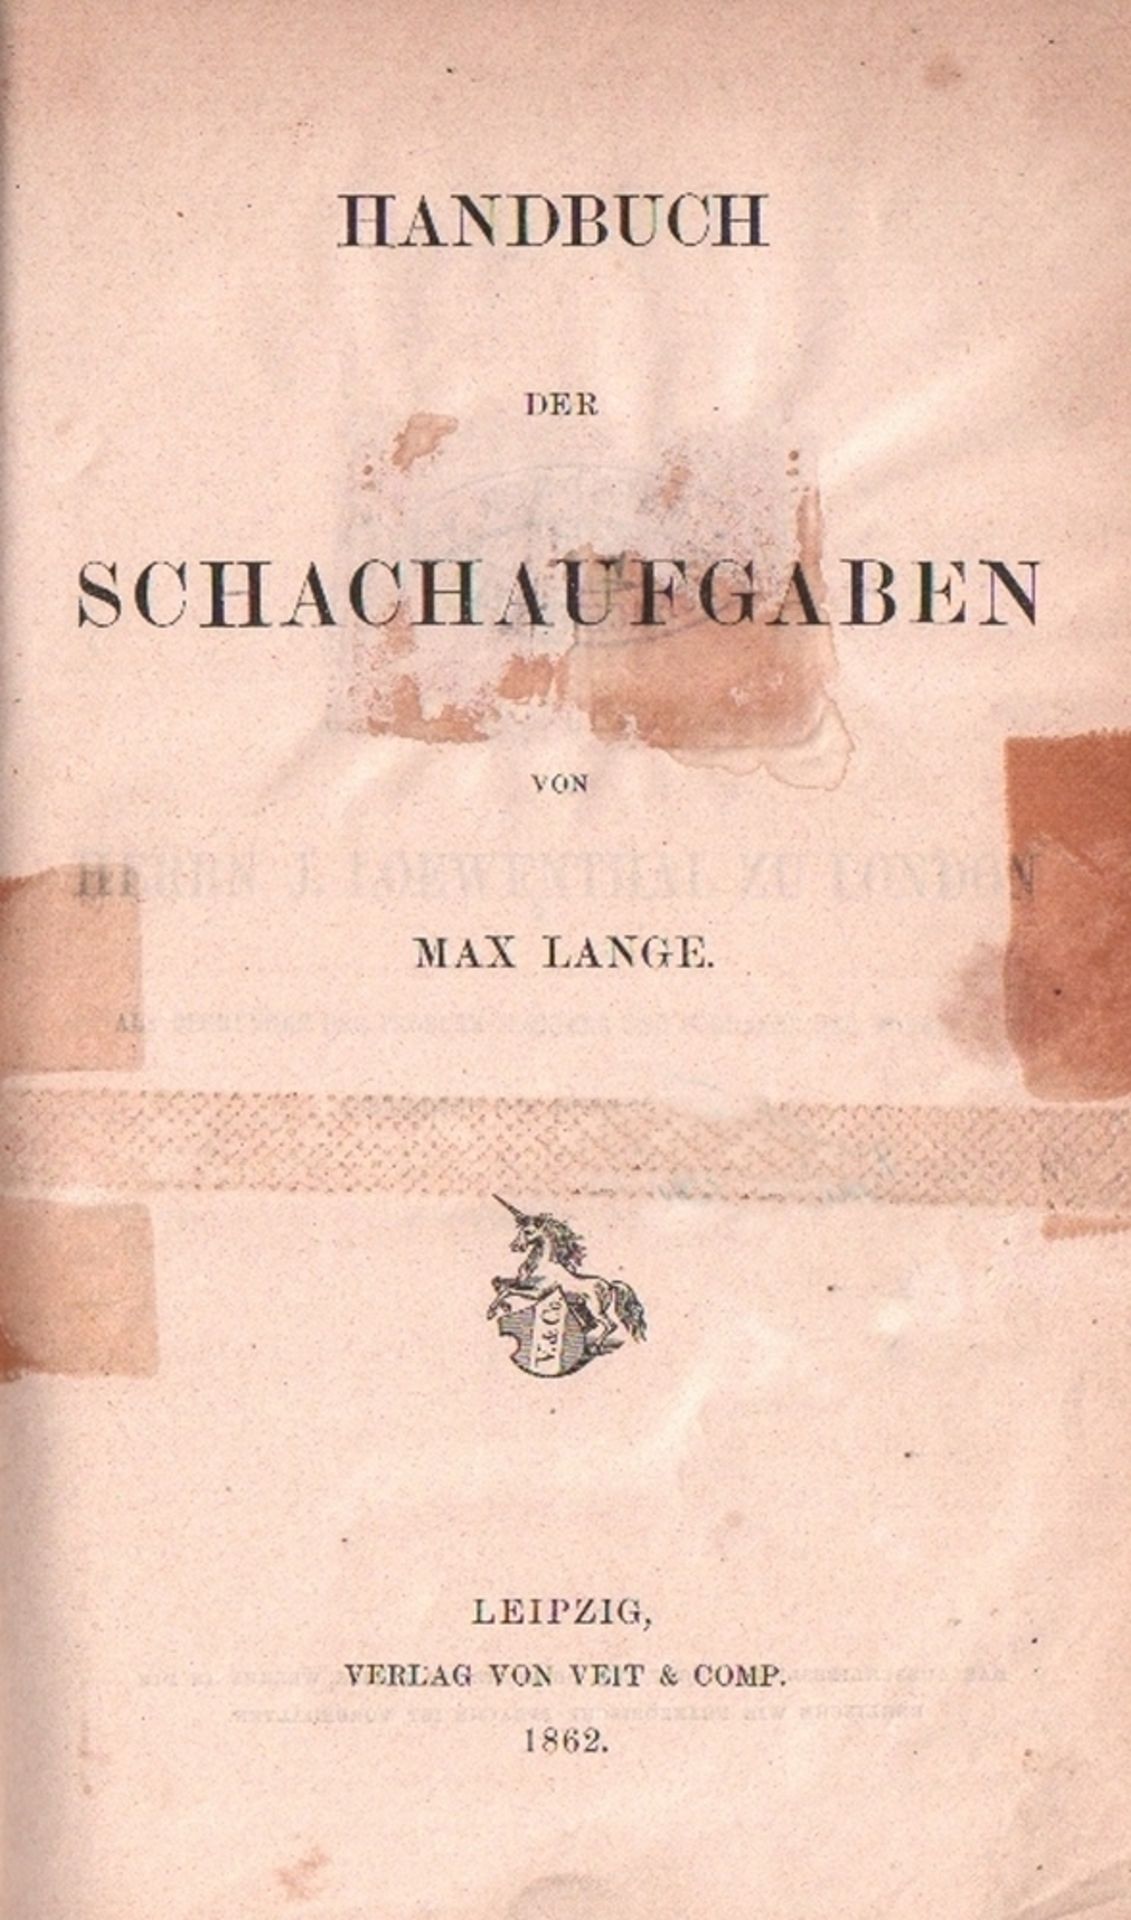 Lange, Max. Handbuch der Schachaufgaben. Leipzig, Veit, 1862. 8°. Mit vielen Diagrammen. XVI, 616